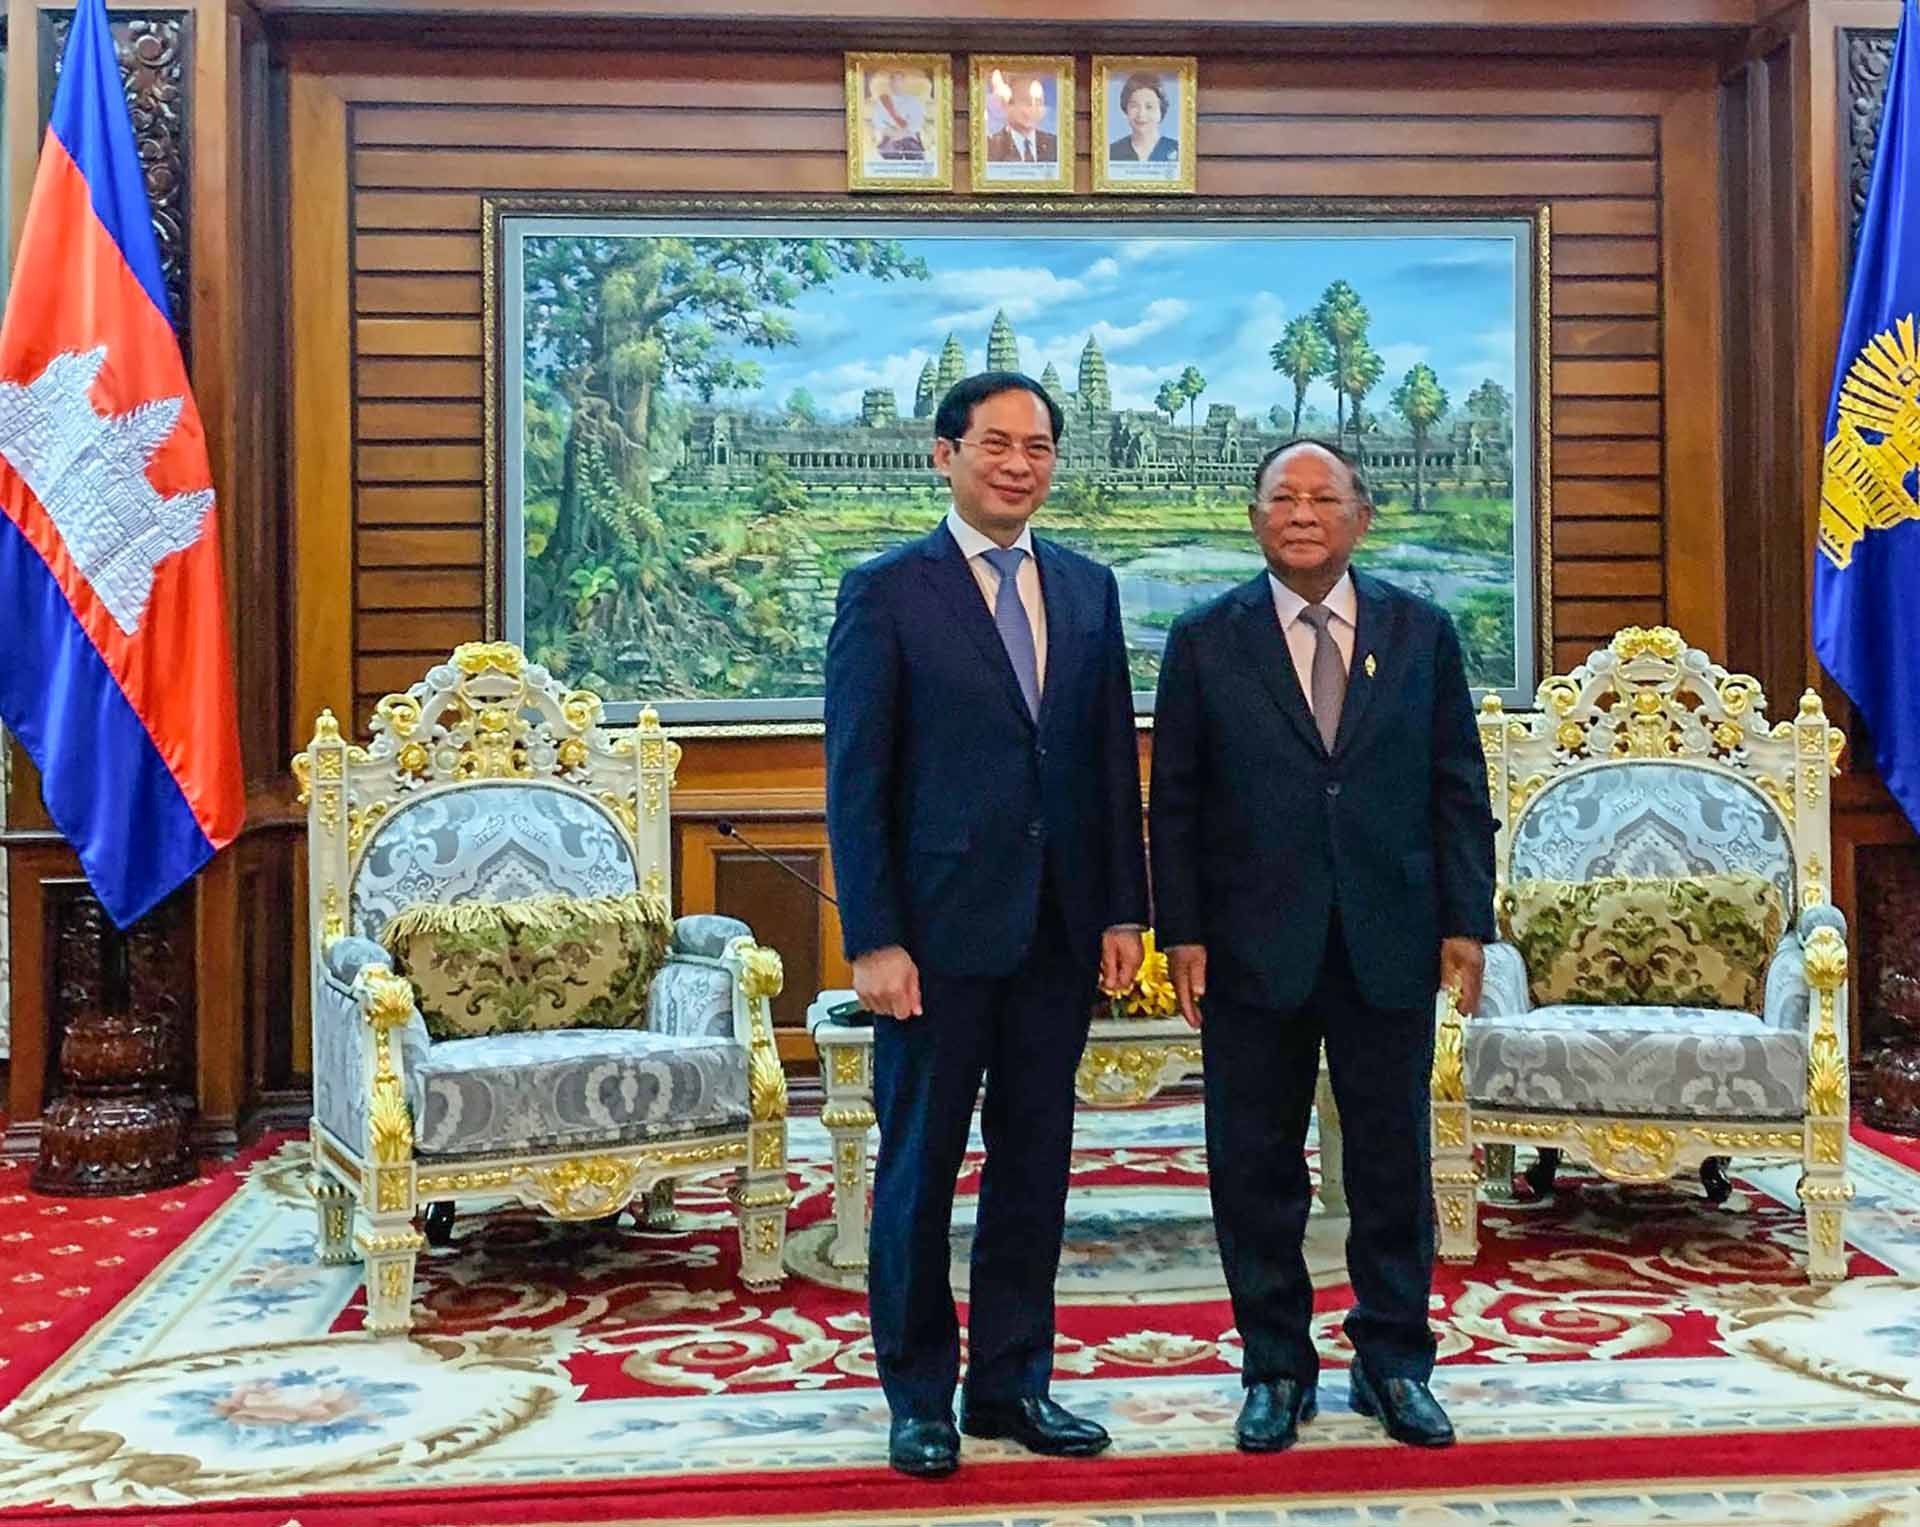 Bộ trưởng Ngoại giao Bùi Thanh Sơn chào xã giao Chủ tịch Quốc hội Campuchia Samdech Heng Samrin.